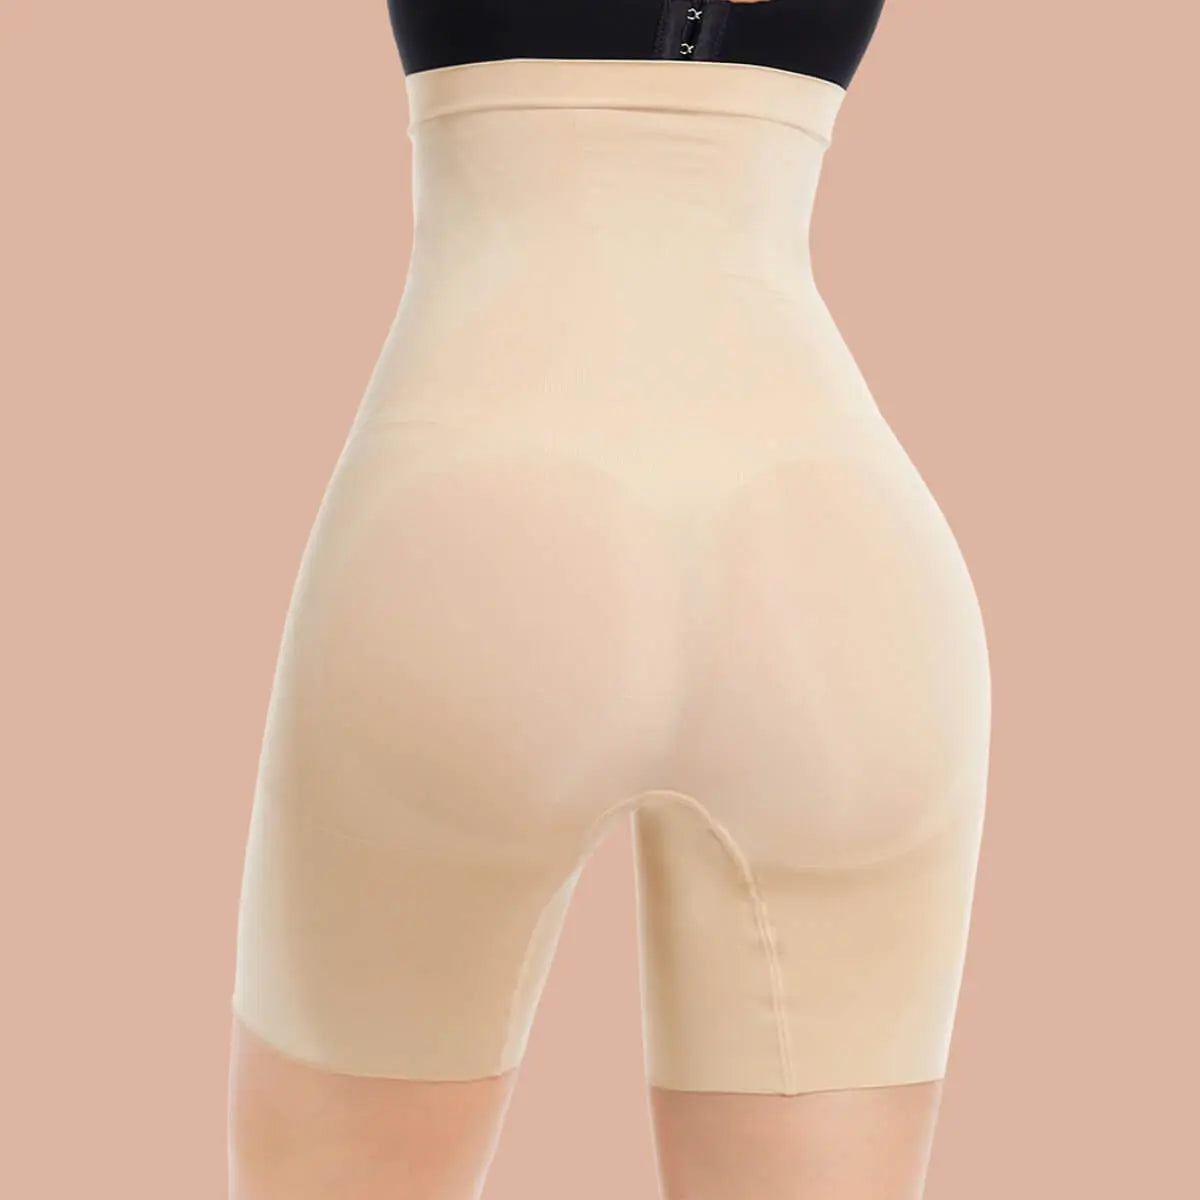 SHAPERX High Waist Shorts Tummy Control Butt Enhancer SHAPERX